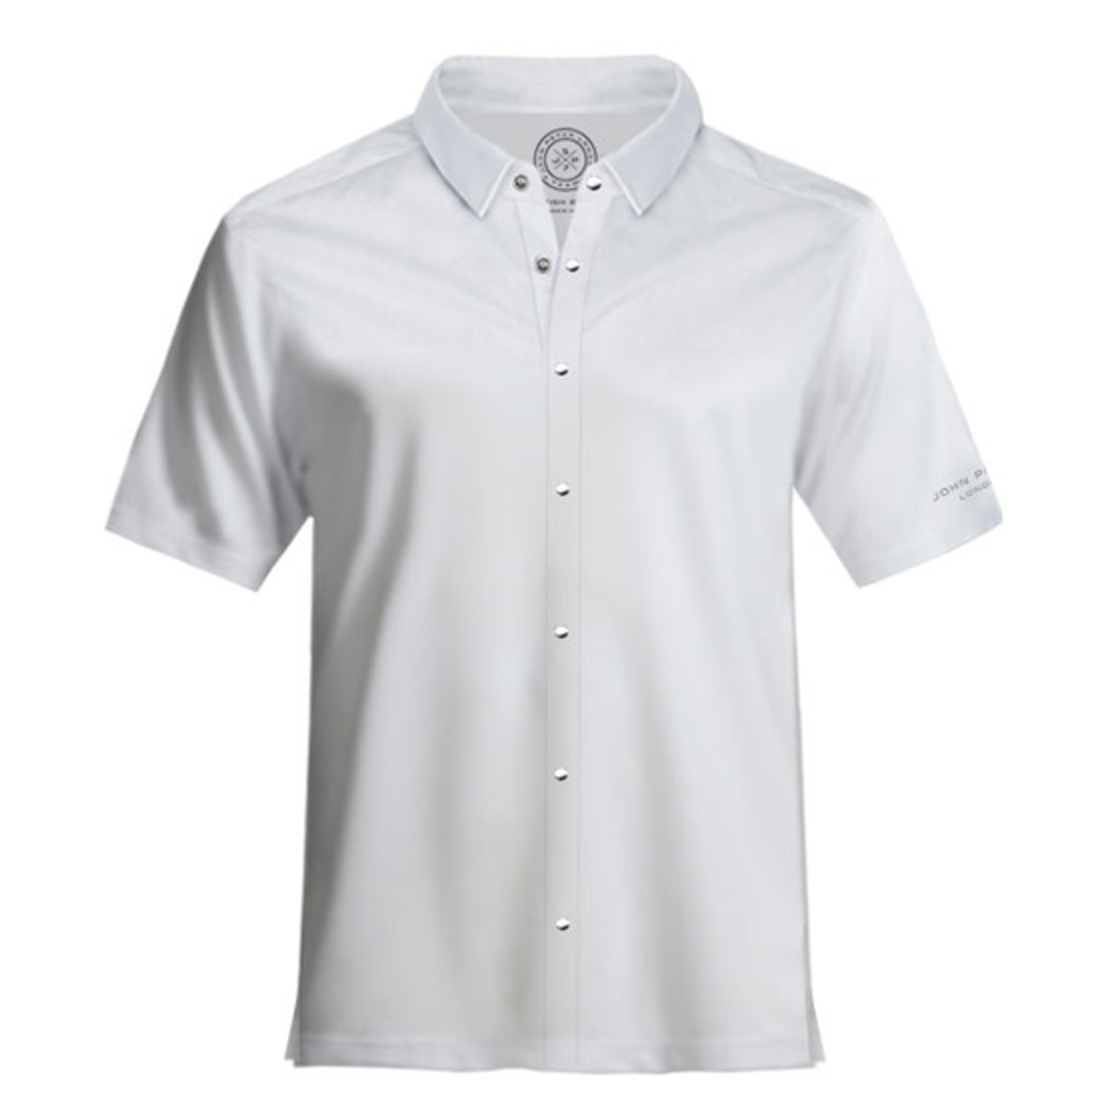 חולצת פולו קצרה עם כפתורים- לבן